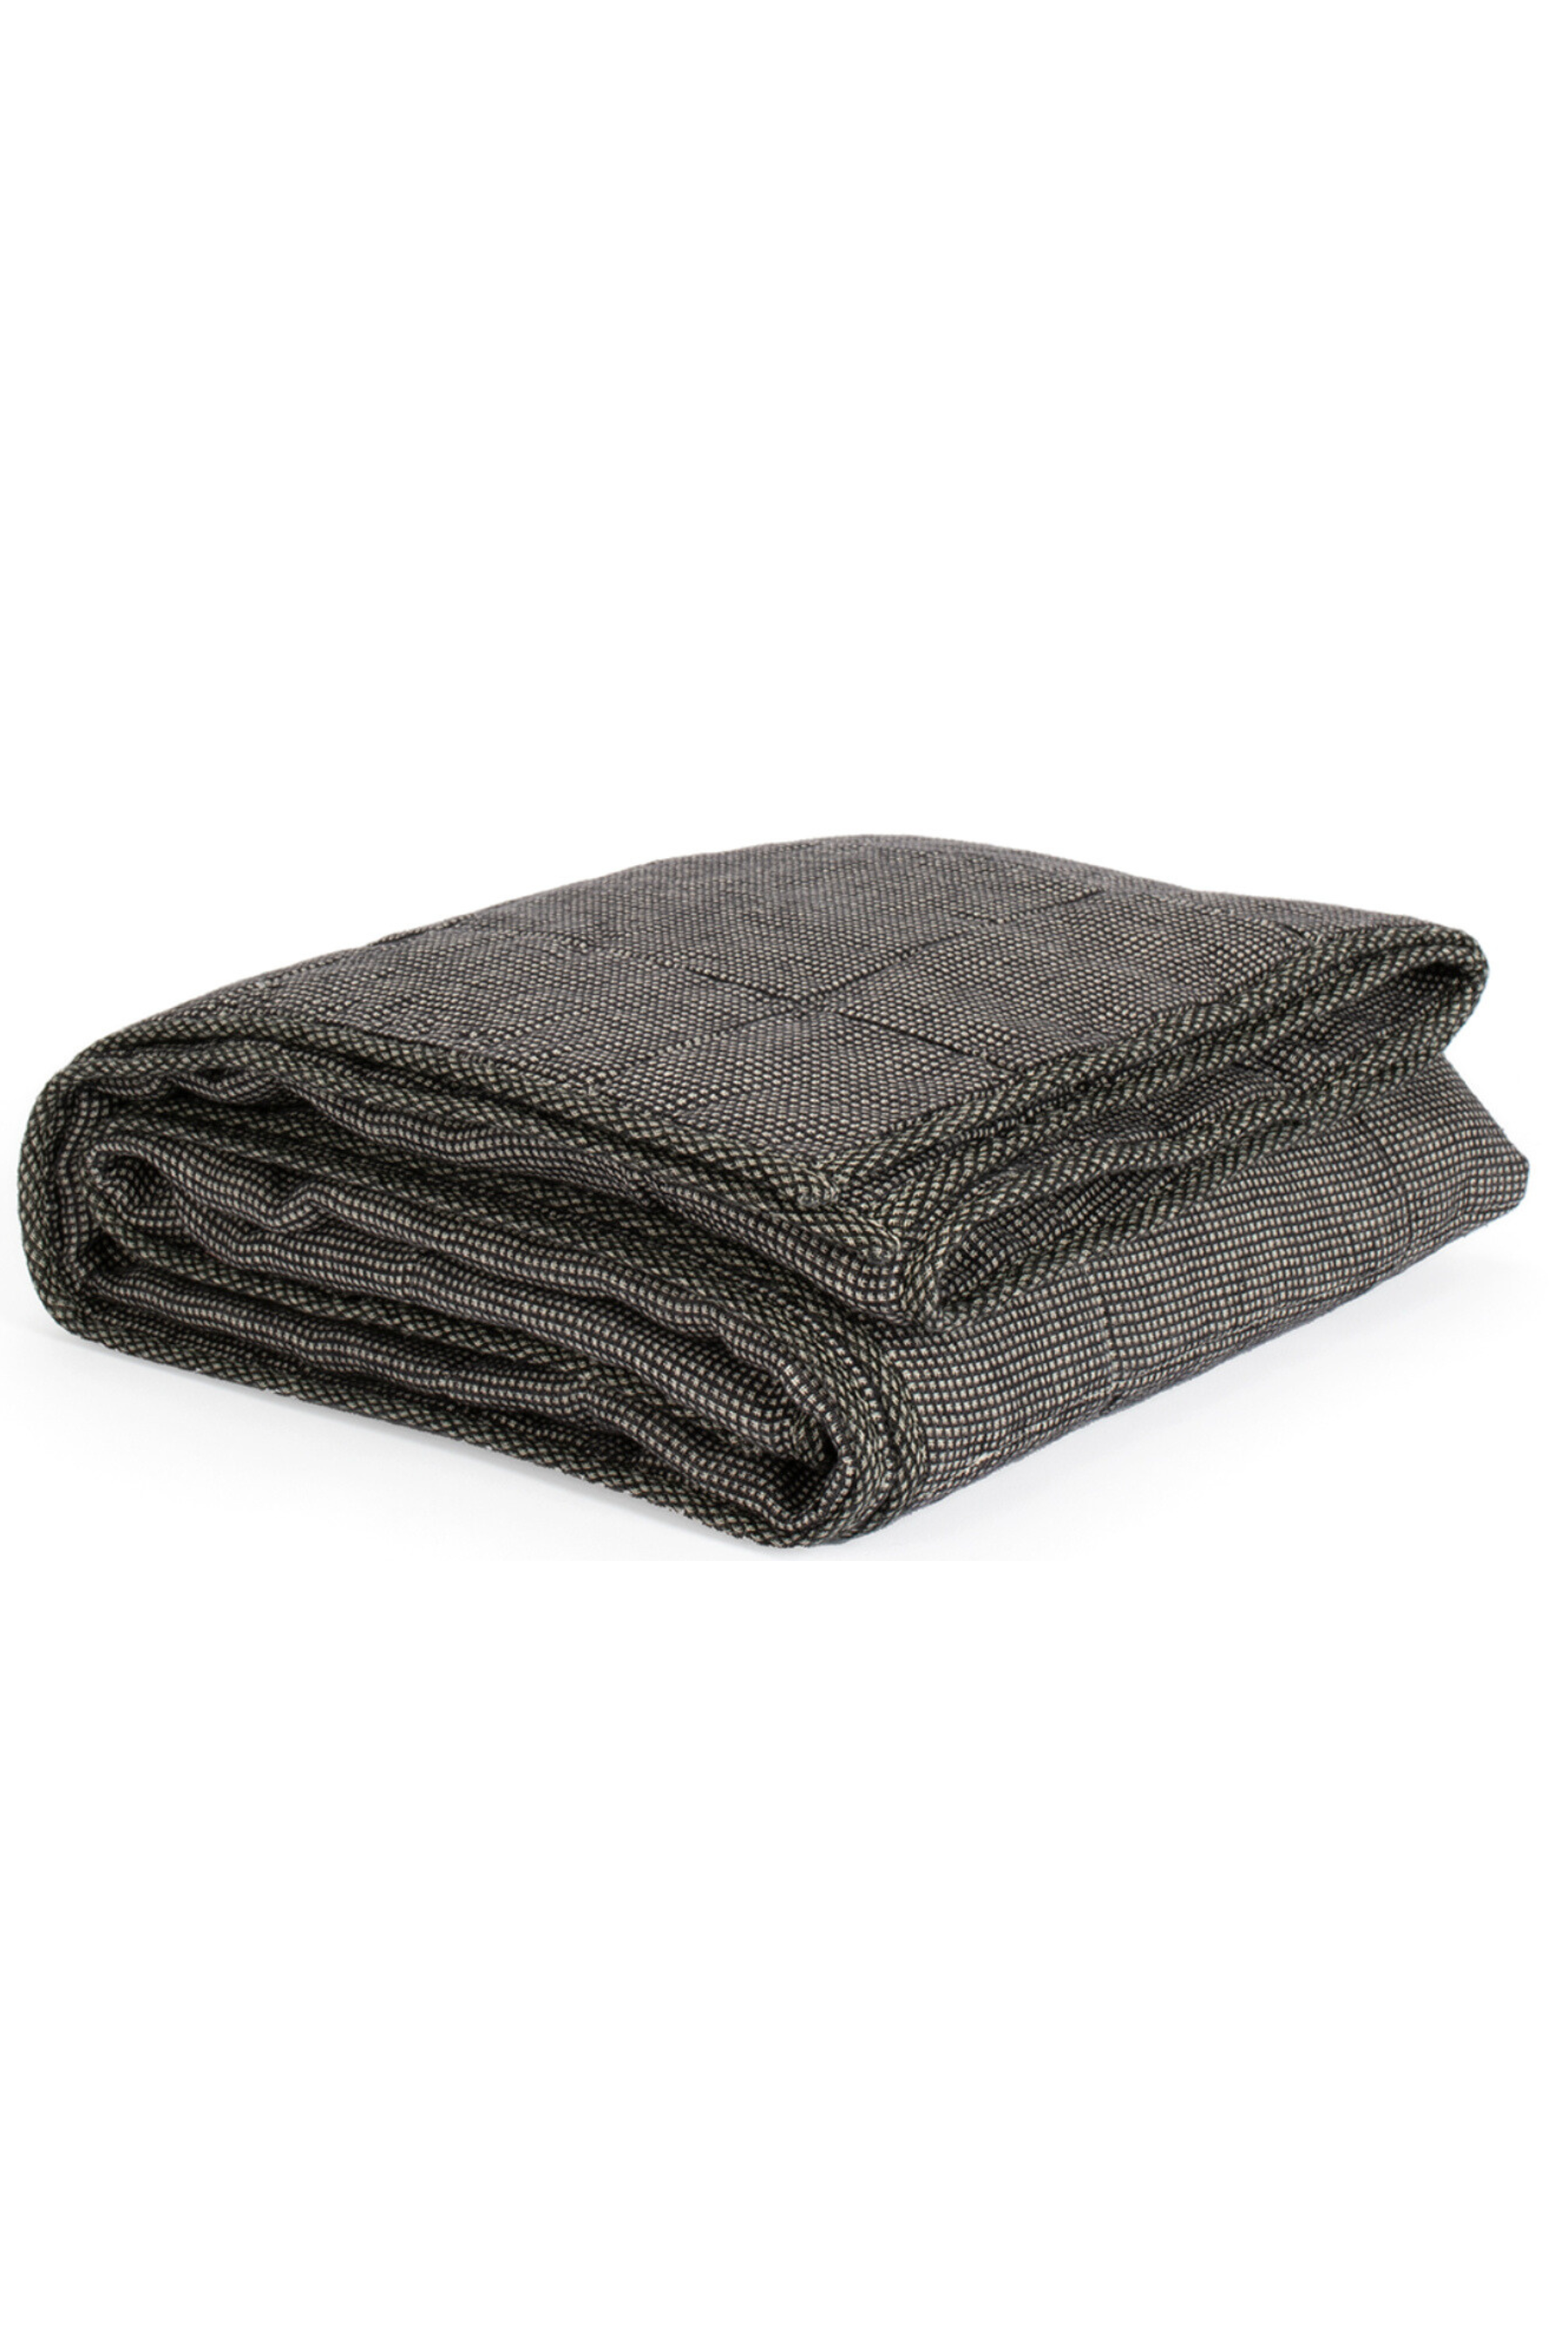 Small Blanket Linen